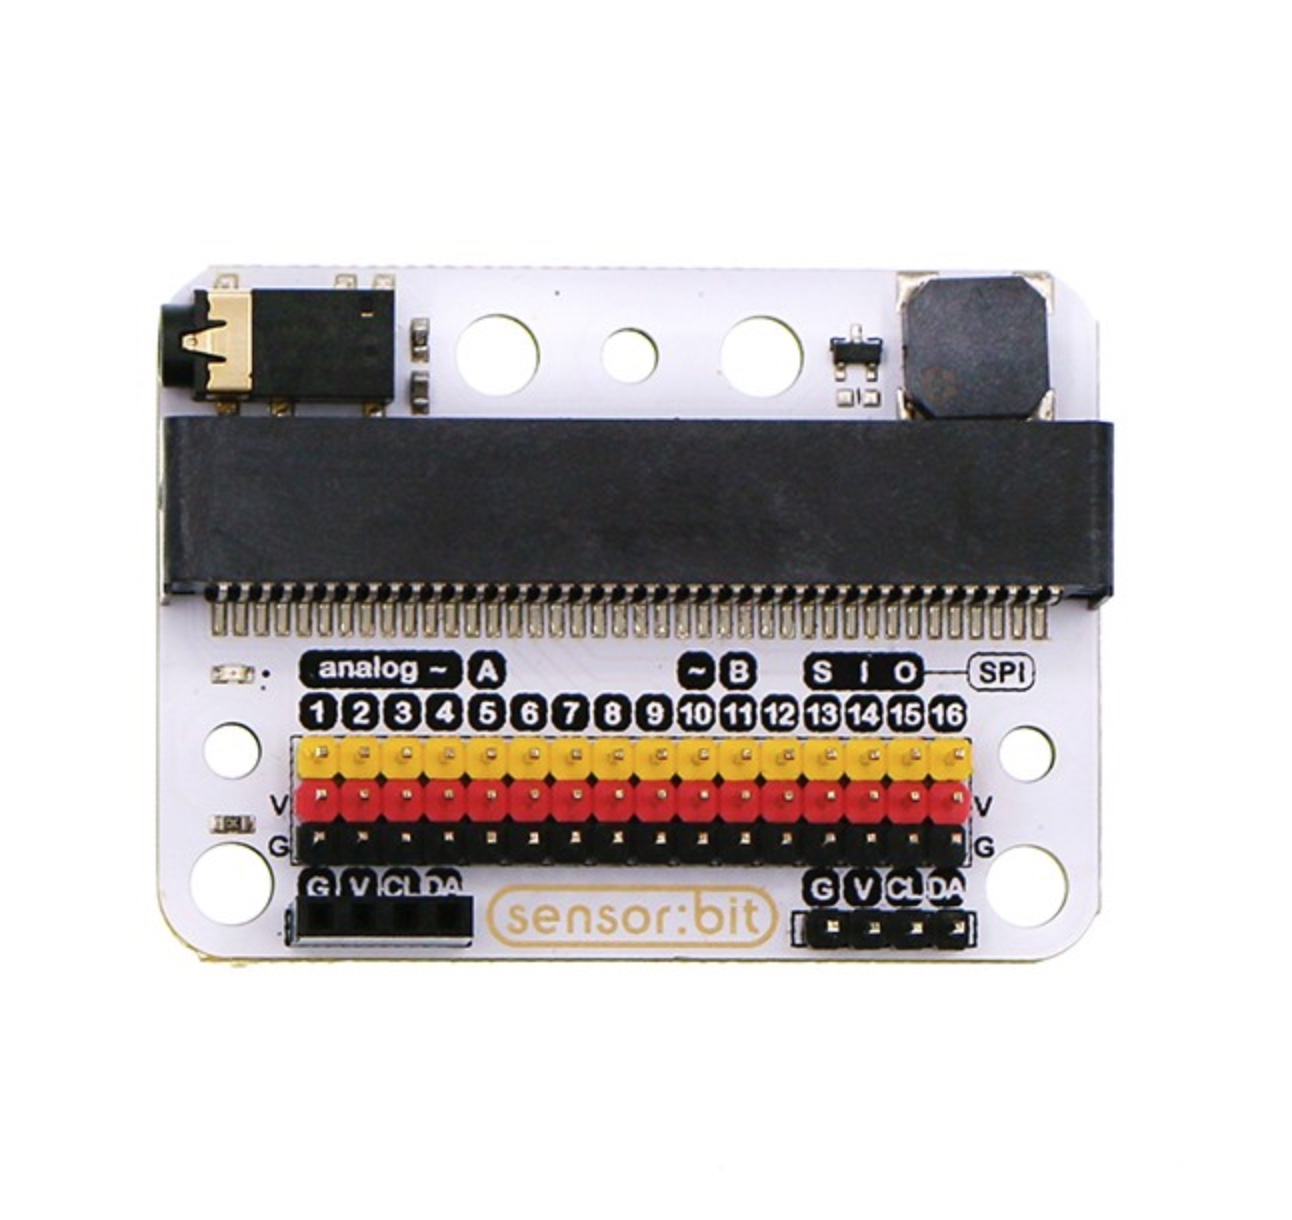 ElecFreaks Sensor:bit micro:bit Breakout Board